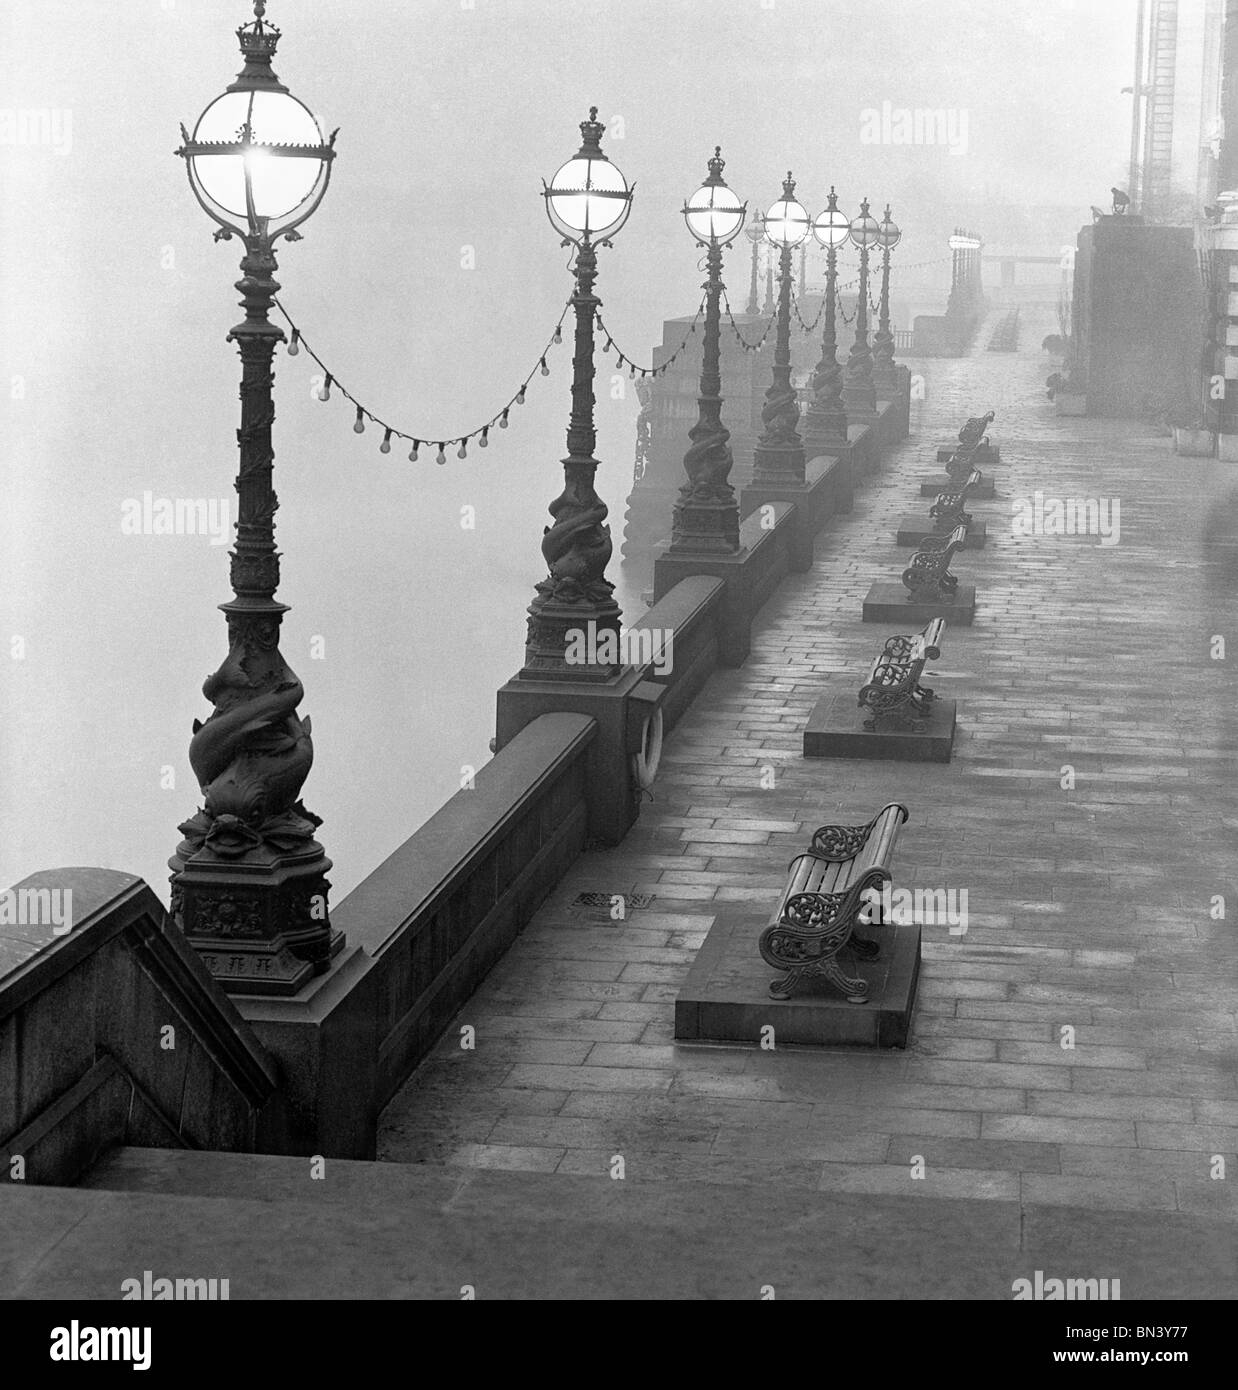 Lampadaires et bancs par la Tamise. Photo John Gay (1909-1999). Londres, Angleterre, c.1940 Banque D'Images